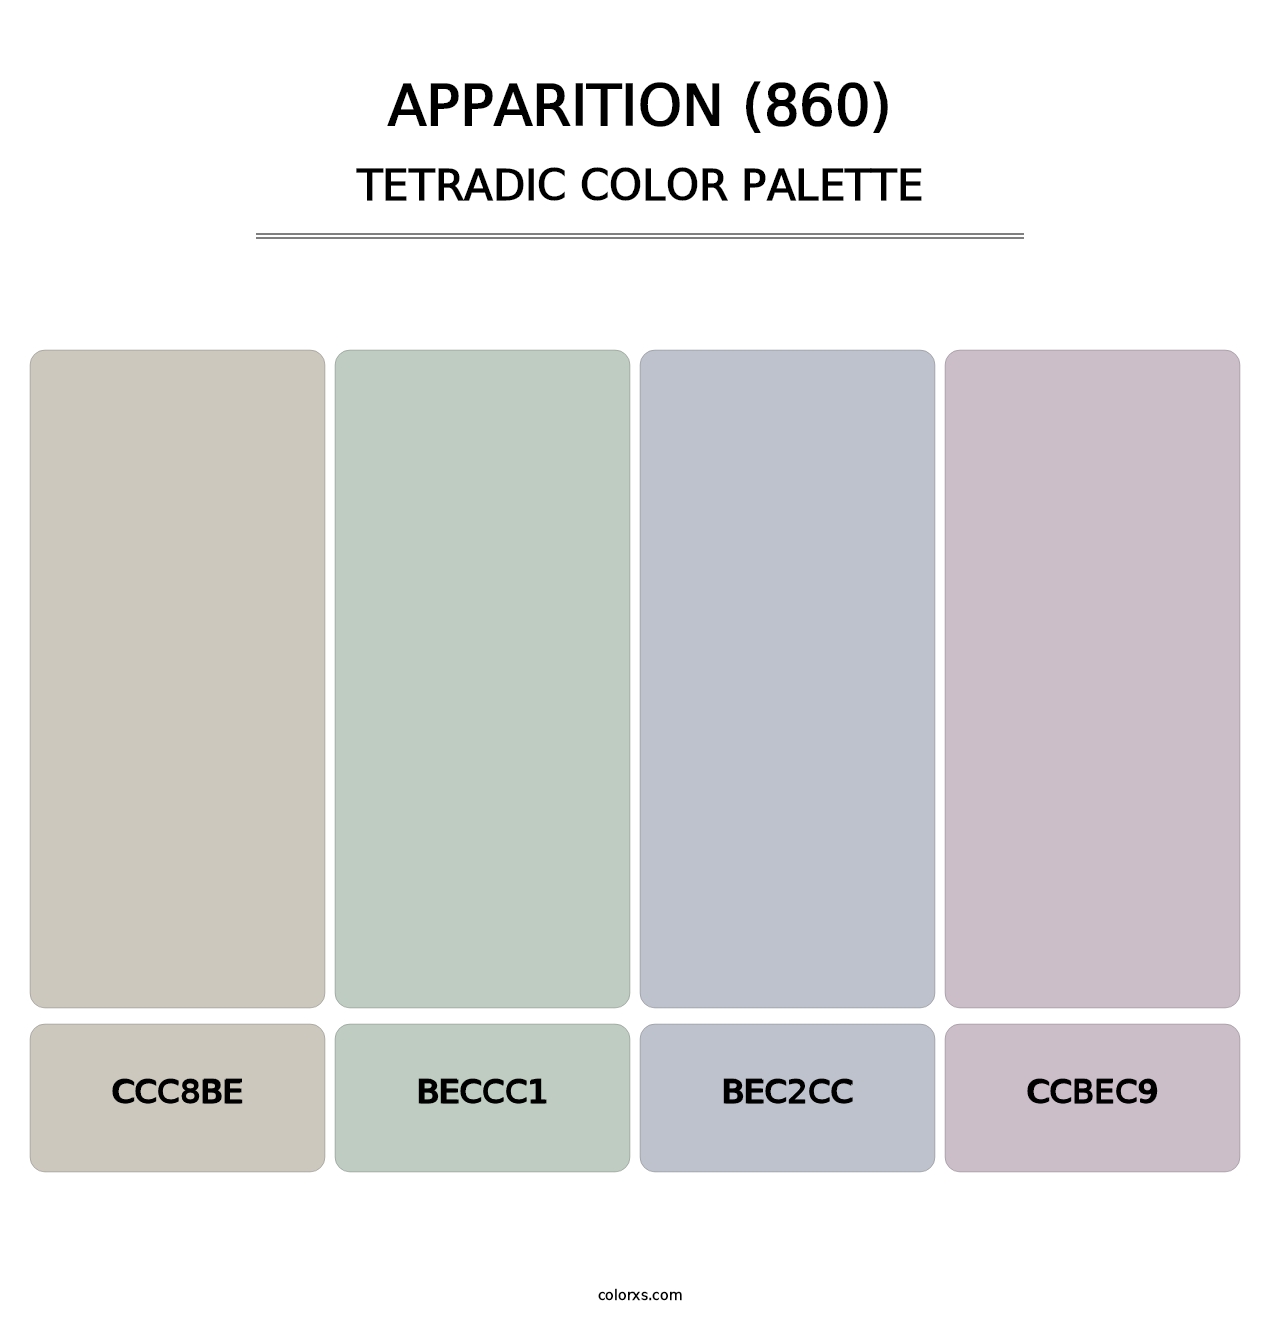 Apparition (860) - Tetradic Color Palette